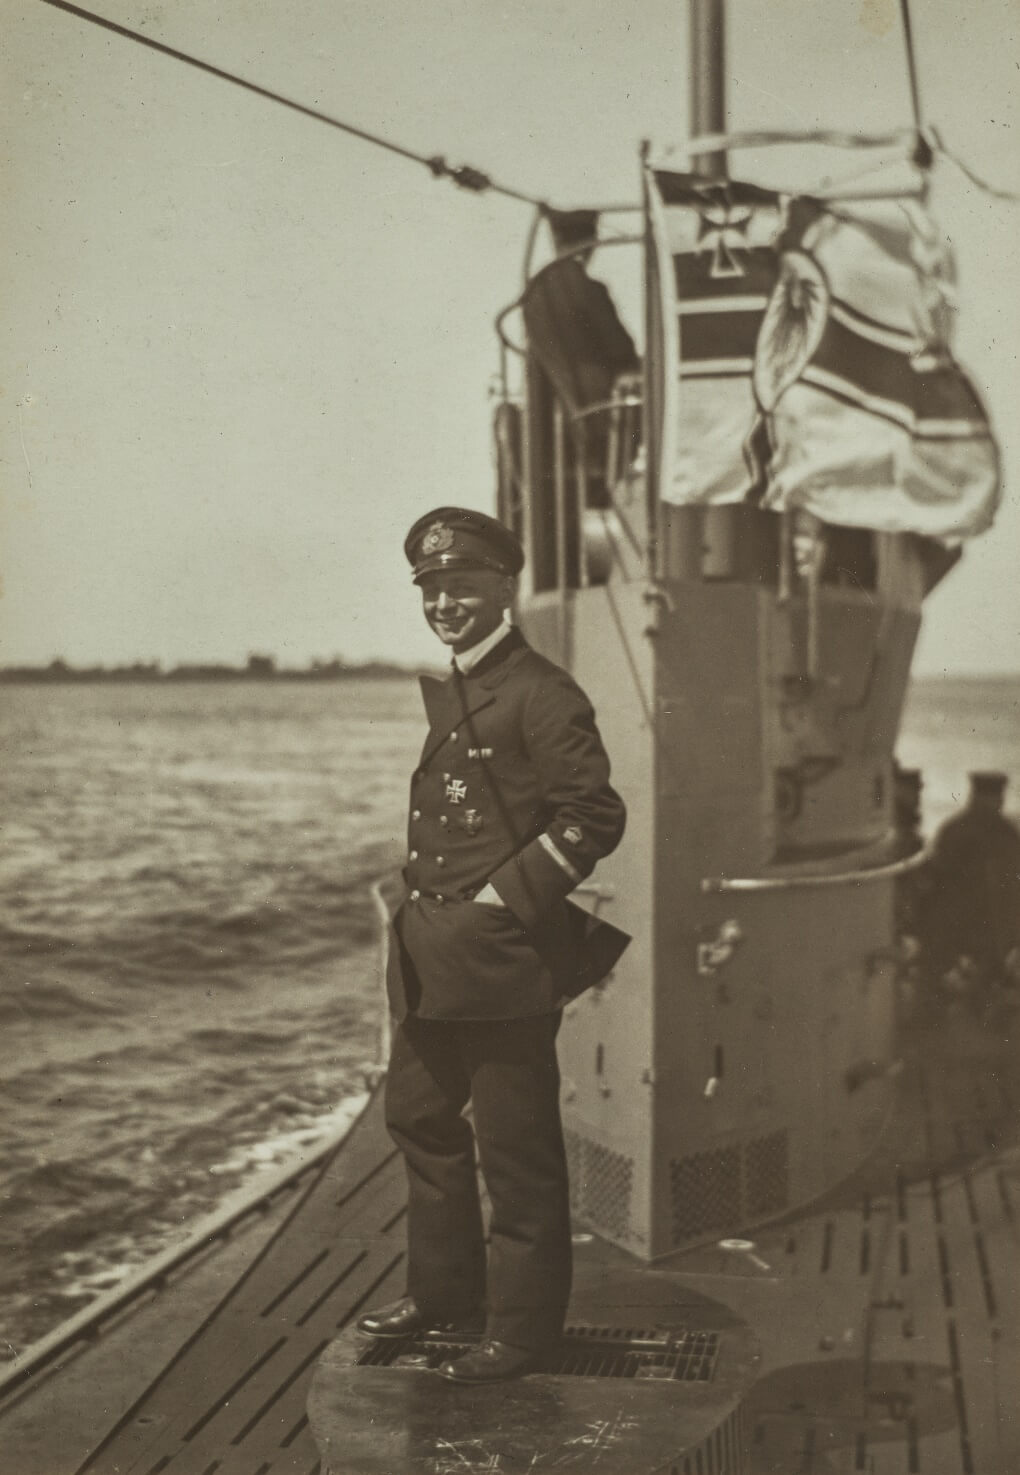 Ein entpannter U-Boot-Kommandant, separat eingeheftet in den Seiten über die U-bootflottille Flandern. Ohne Angaben.